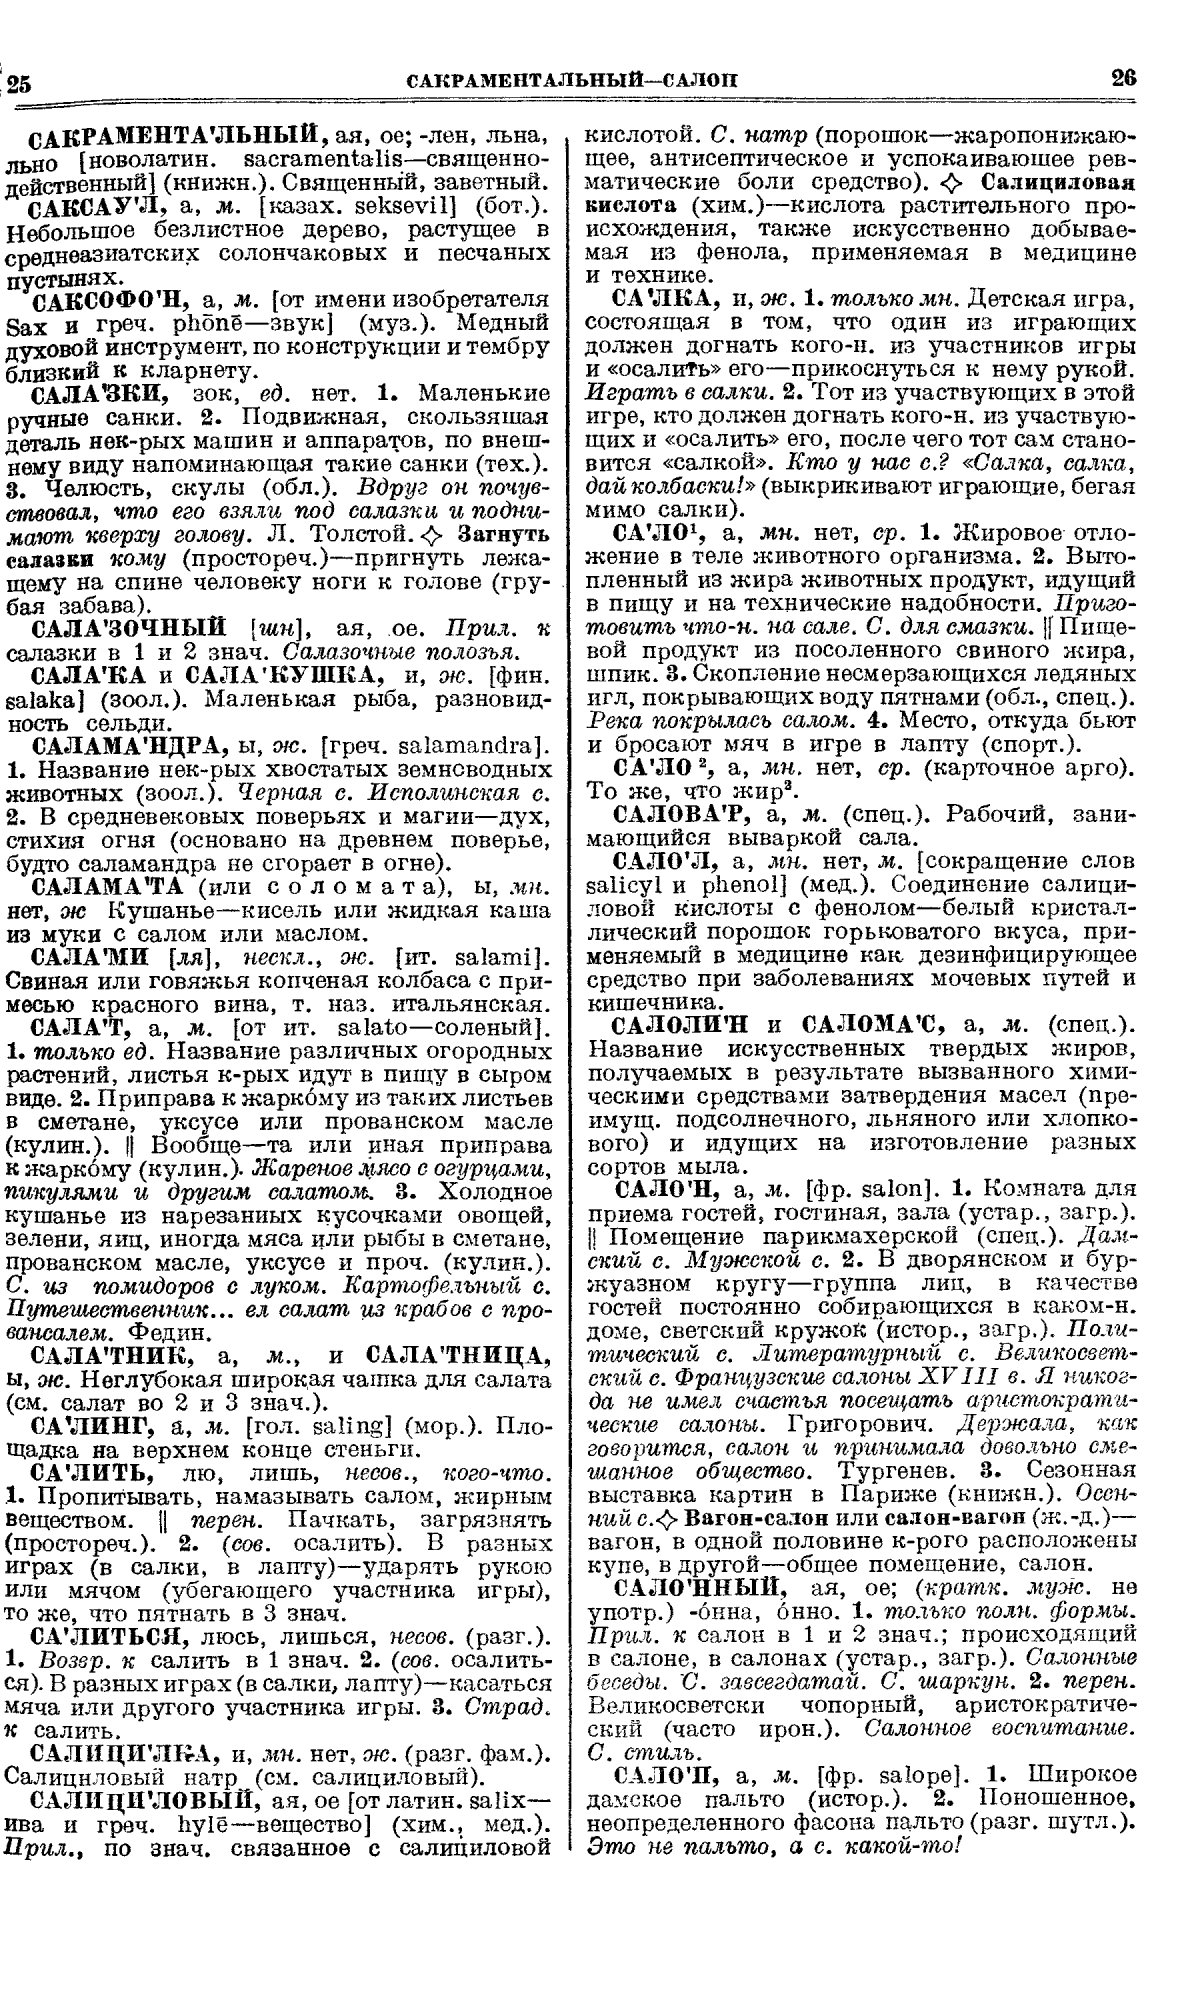 Фотокопия pdf / скан страницы 13 толкового словаря Ушакова (том 1)